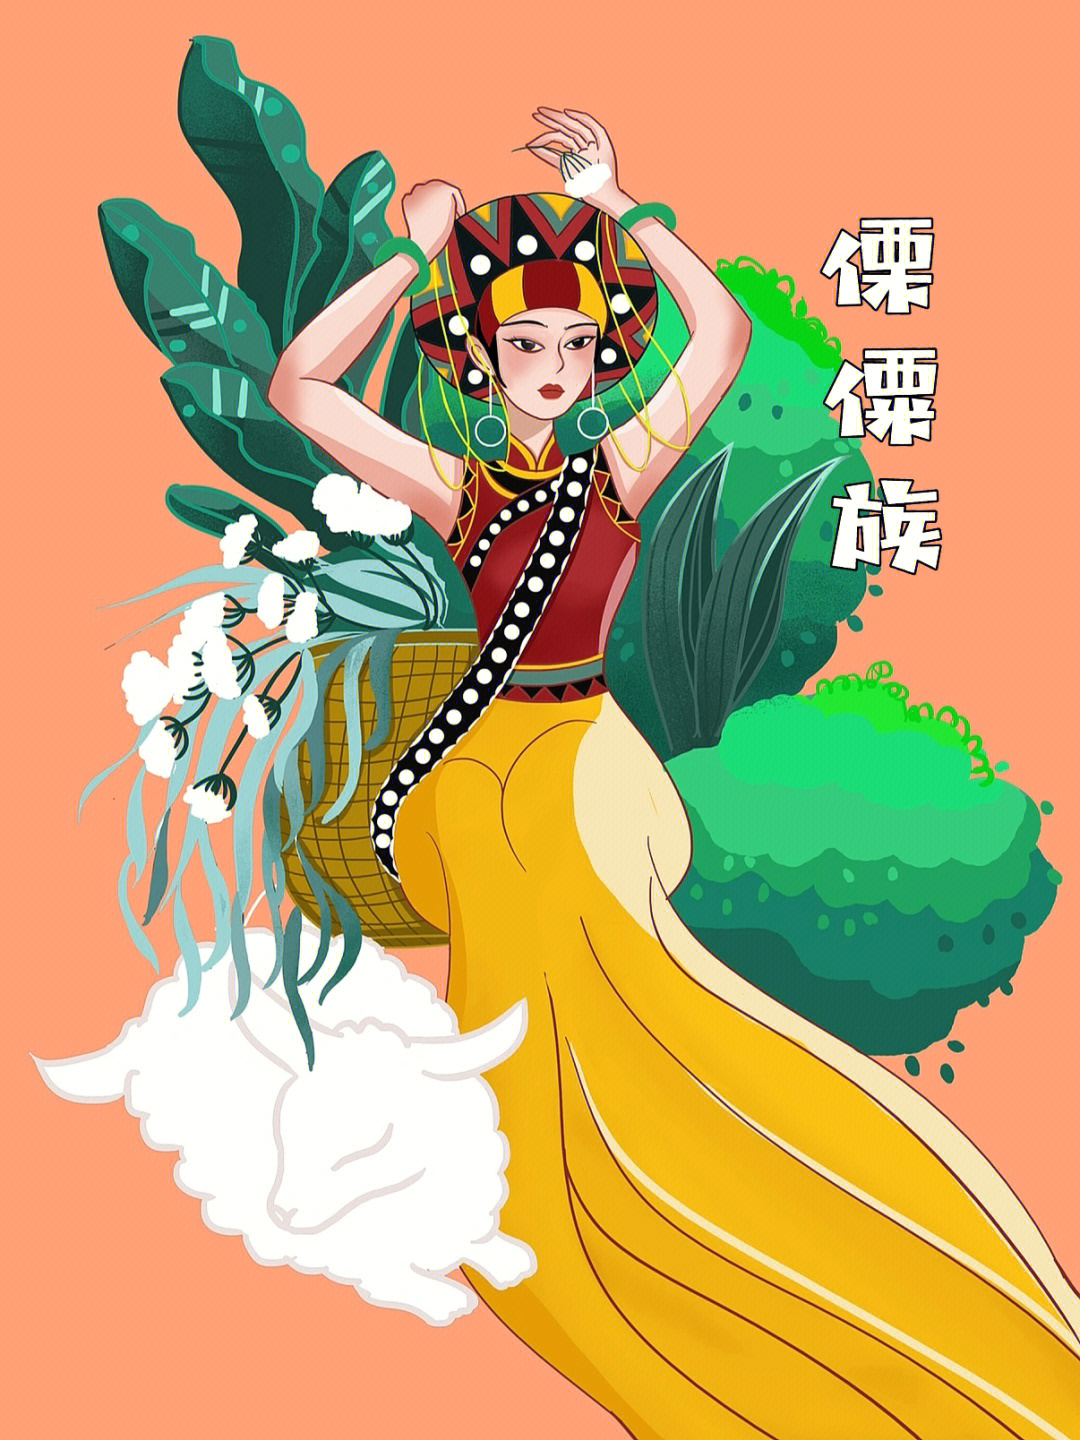 傈僳族文化宣传图画图片